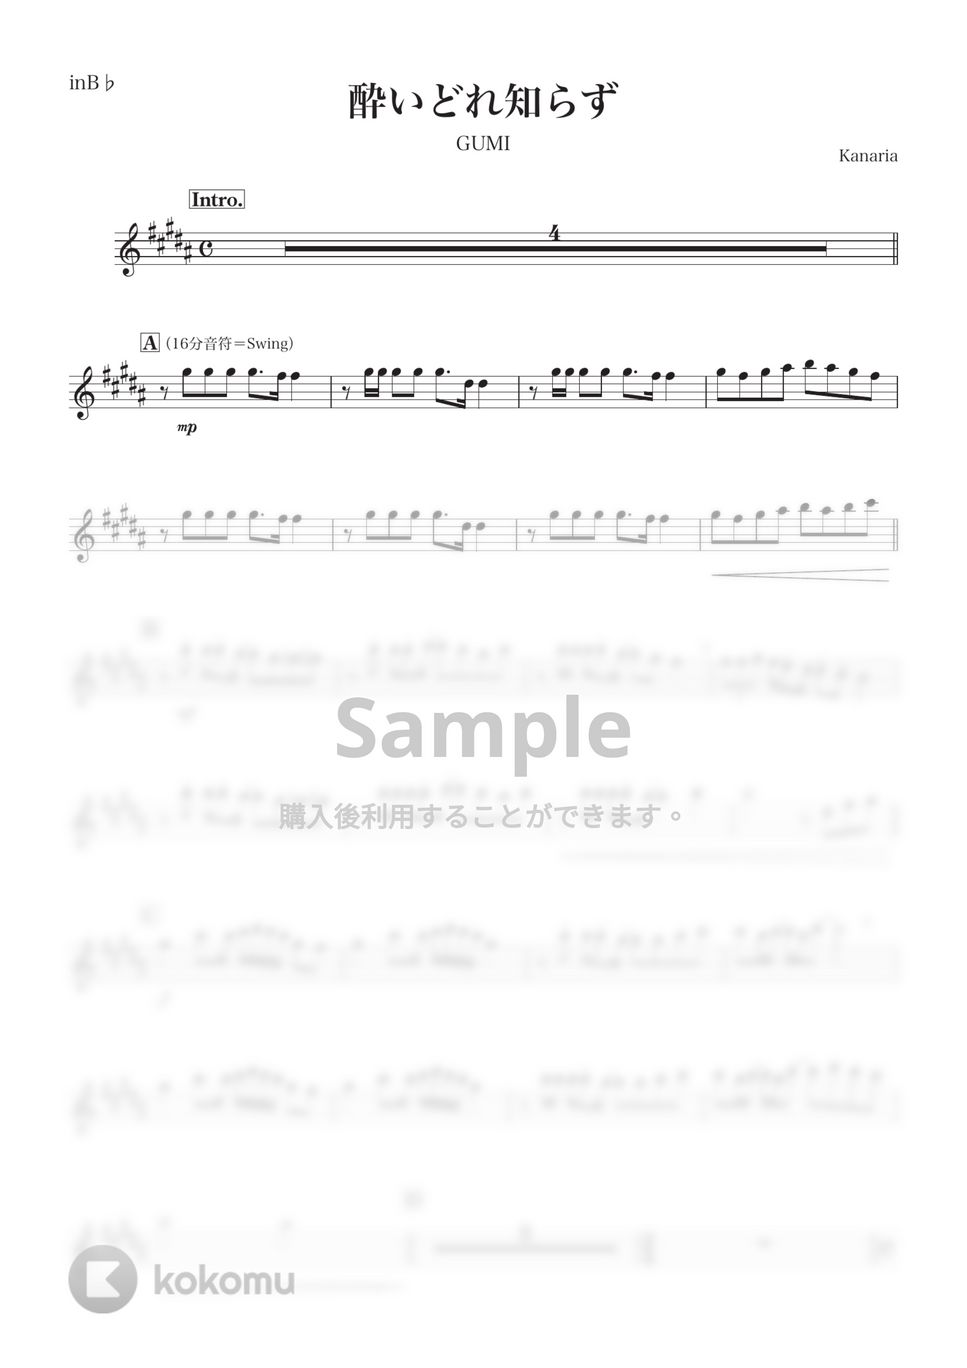 Kanaria - 酔いどれ知らず (B♭) by kanamusic